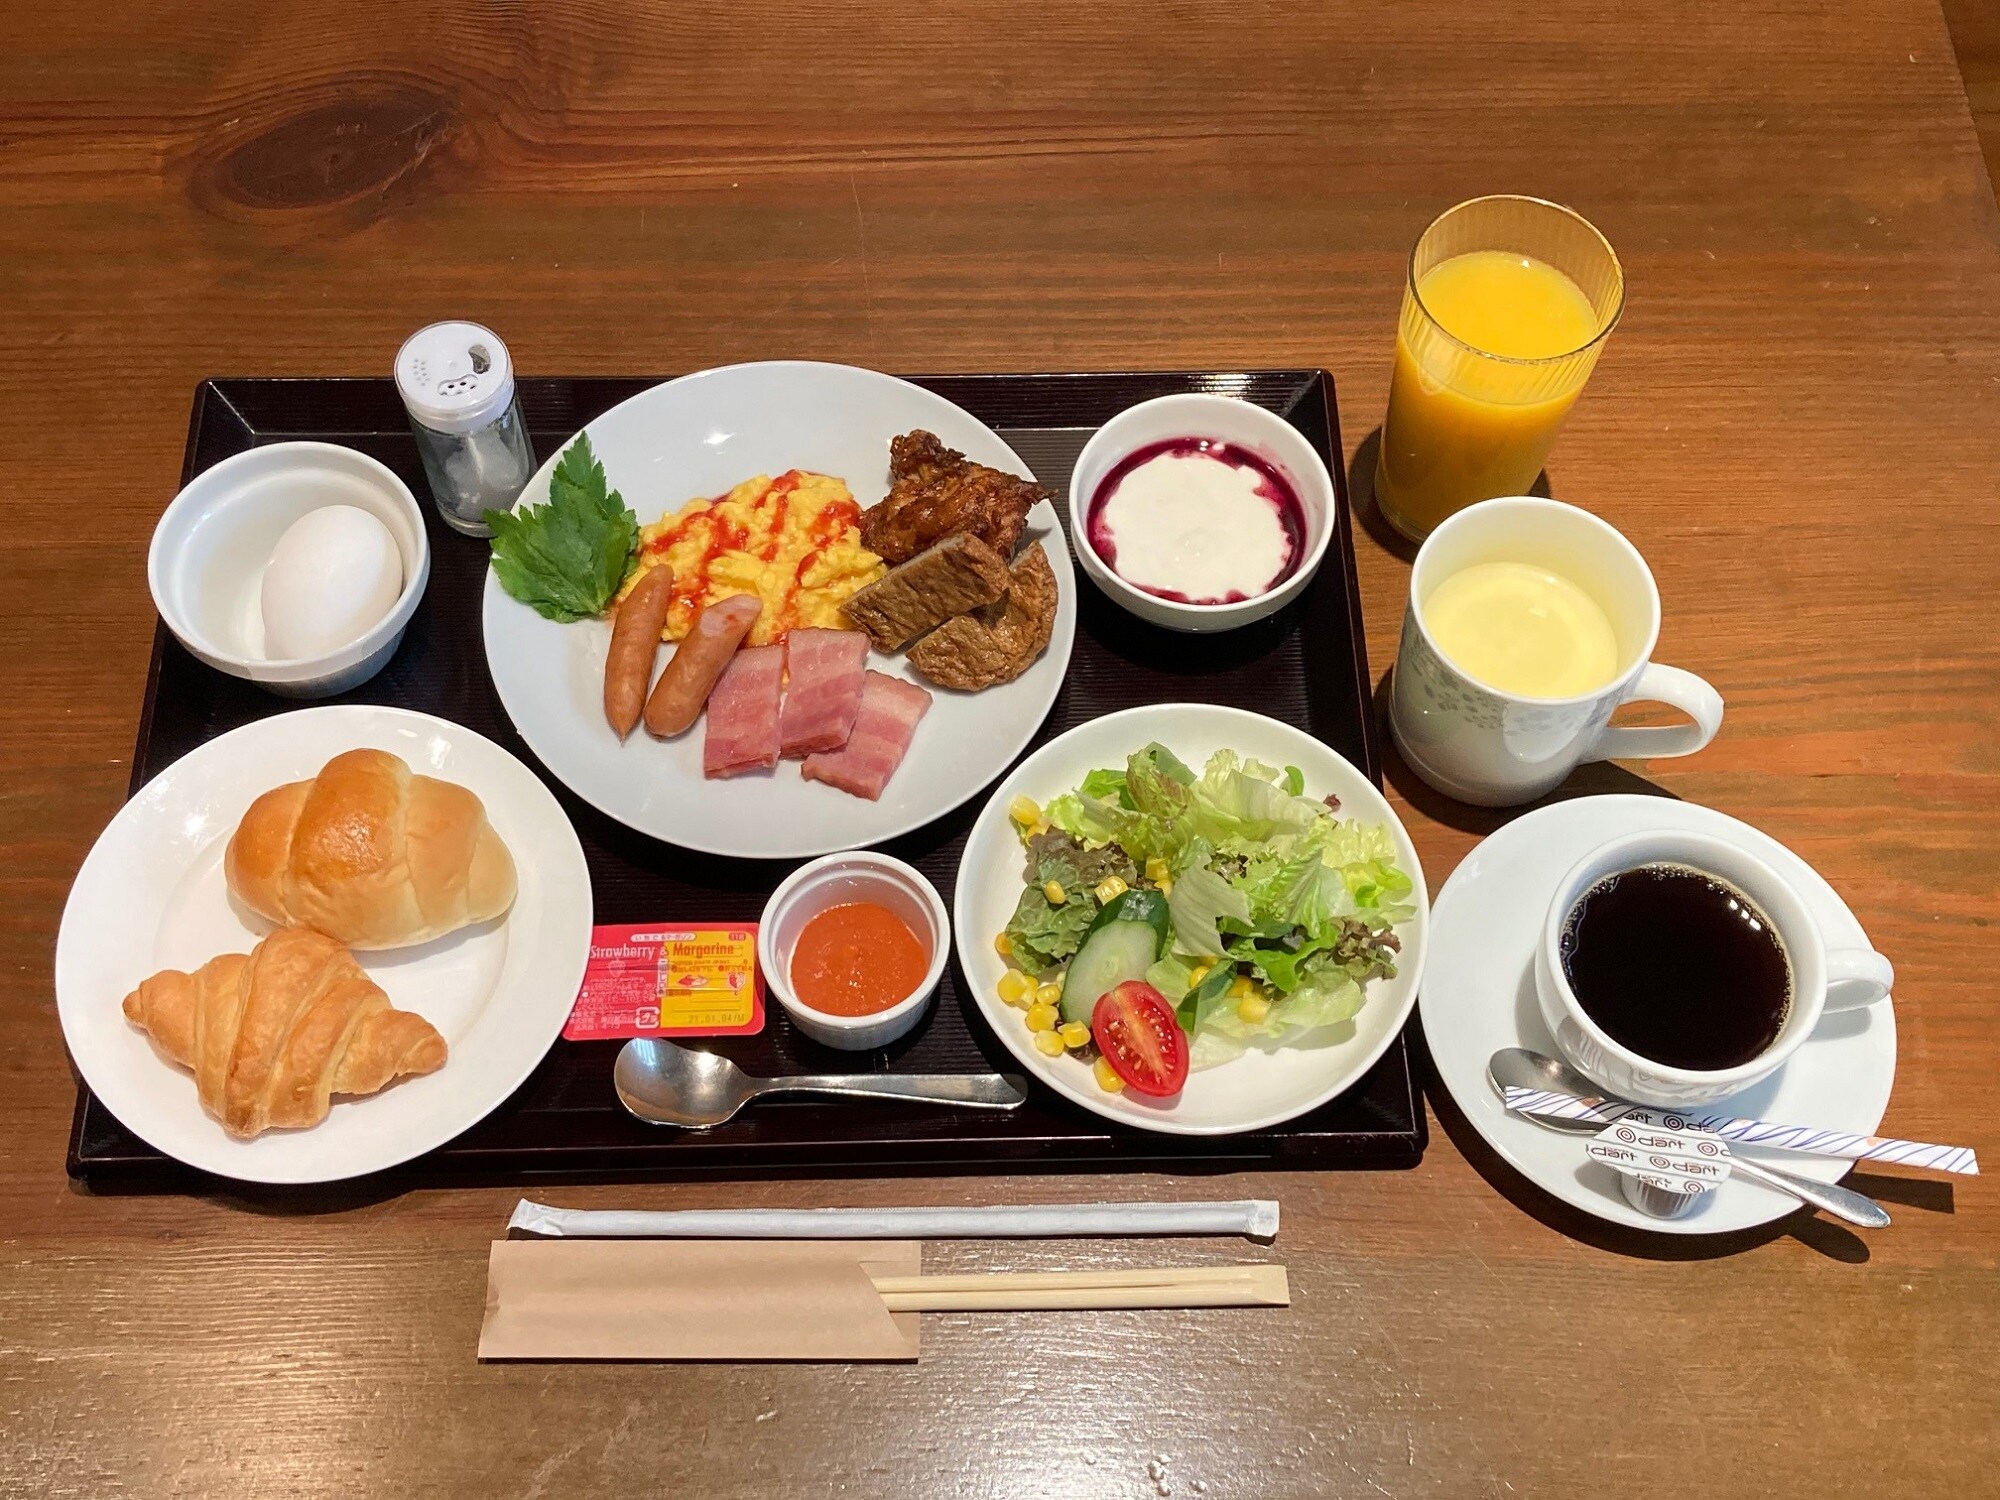 「양정식」 현재, 아침 식사 형식을 변경하고 있습니다. 일본과 서양을 체크인 할 때 선택하고 있습니다.